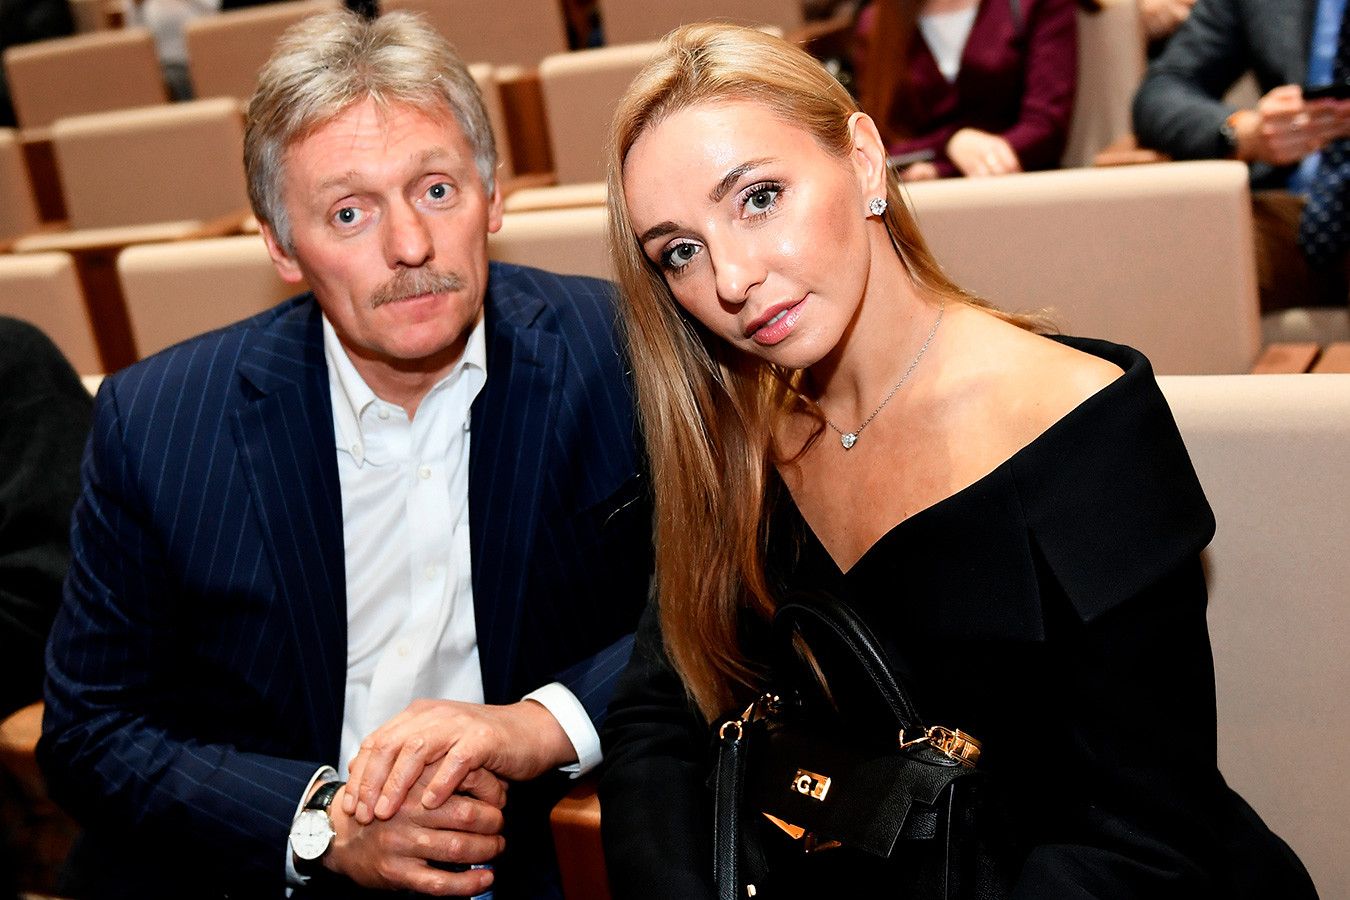 Дружина Пєскова розлютила росіян - інстаграм Навки заповнили негативні коментарі - 24 Канал